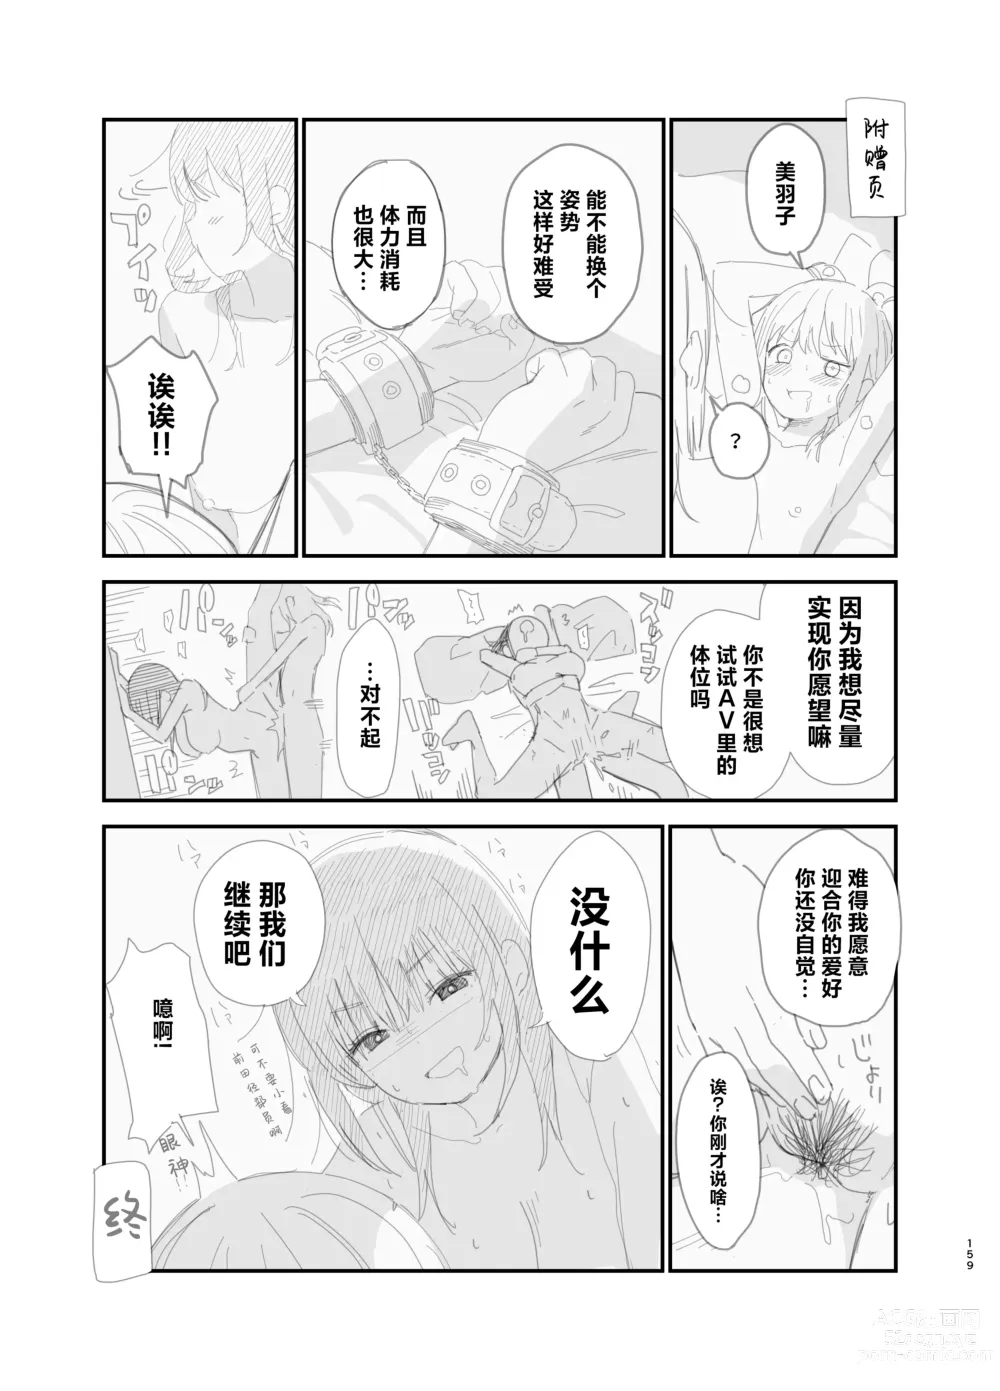 Page 158 of doujinshi Soushi Souai.